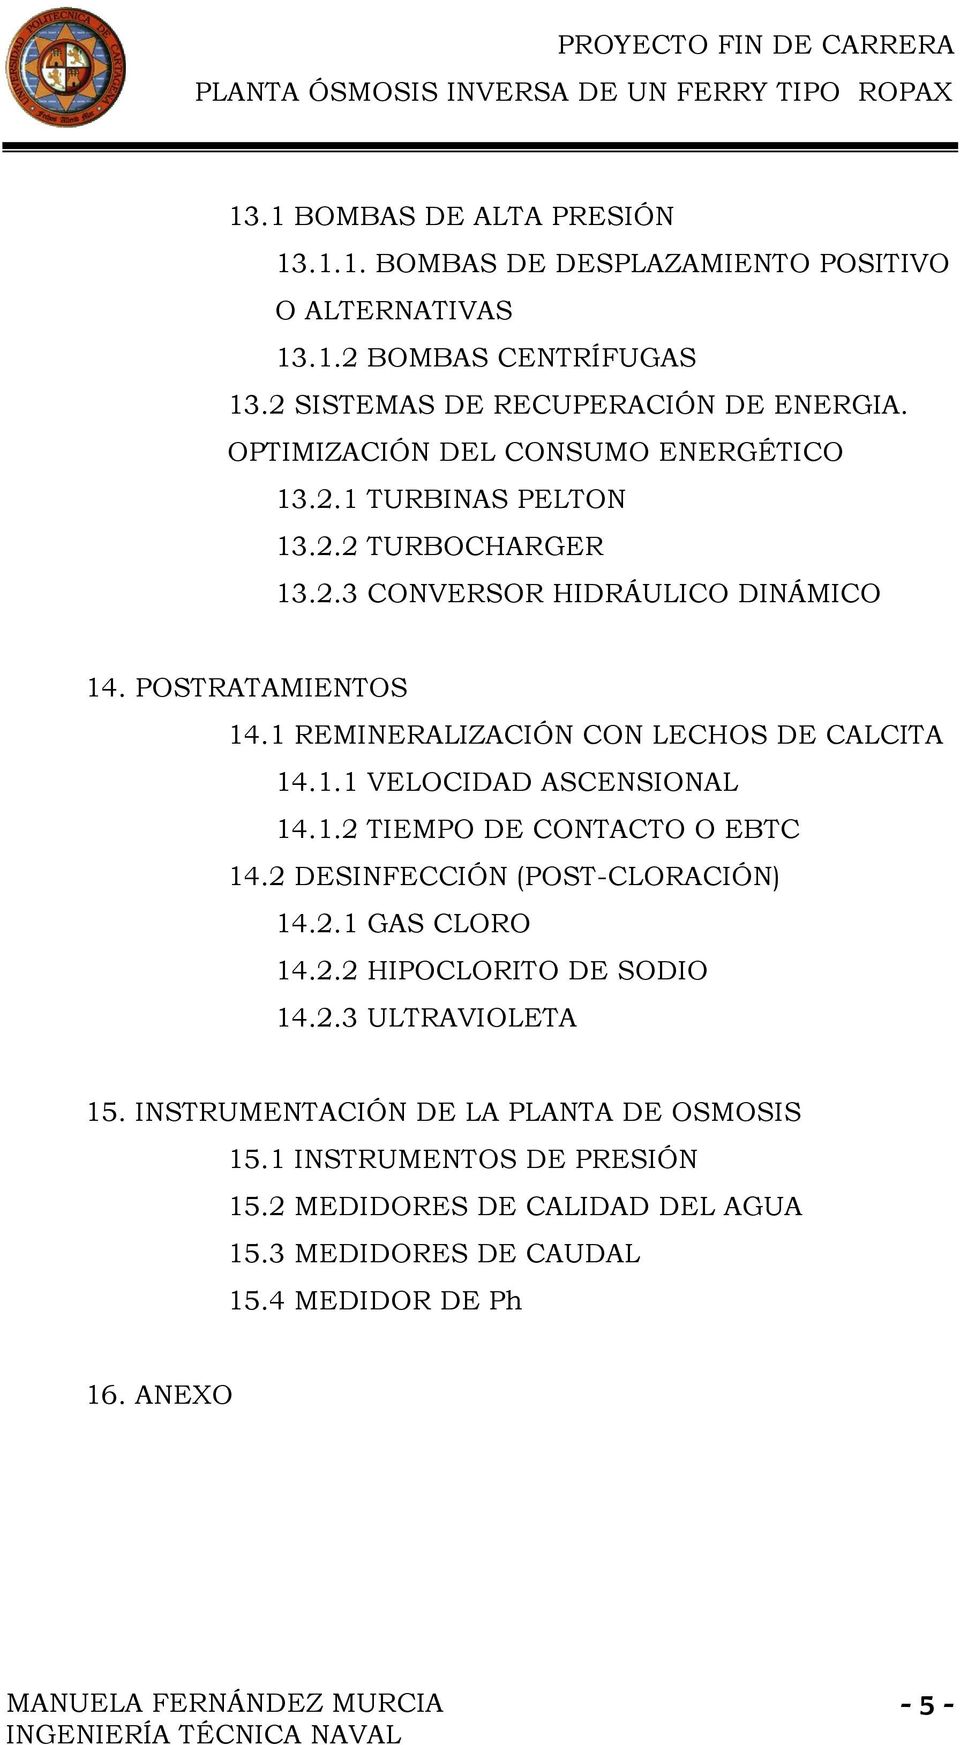 1 REMINERALIZACIÓN CON LECHOS DE CALCITA 14.1.1 VELOCIDAD ASCENSIONAL 14.1.2 TIEMPO DE CONTACTO O EBTC 14.2 DESINFECCIÓN (POST-CLORACIÓN) 14.2.1 GAS CLORO 14.2.2 HIPOCLORITO DE SODIO 14.